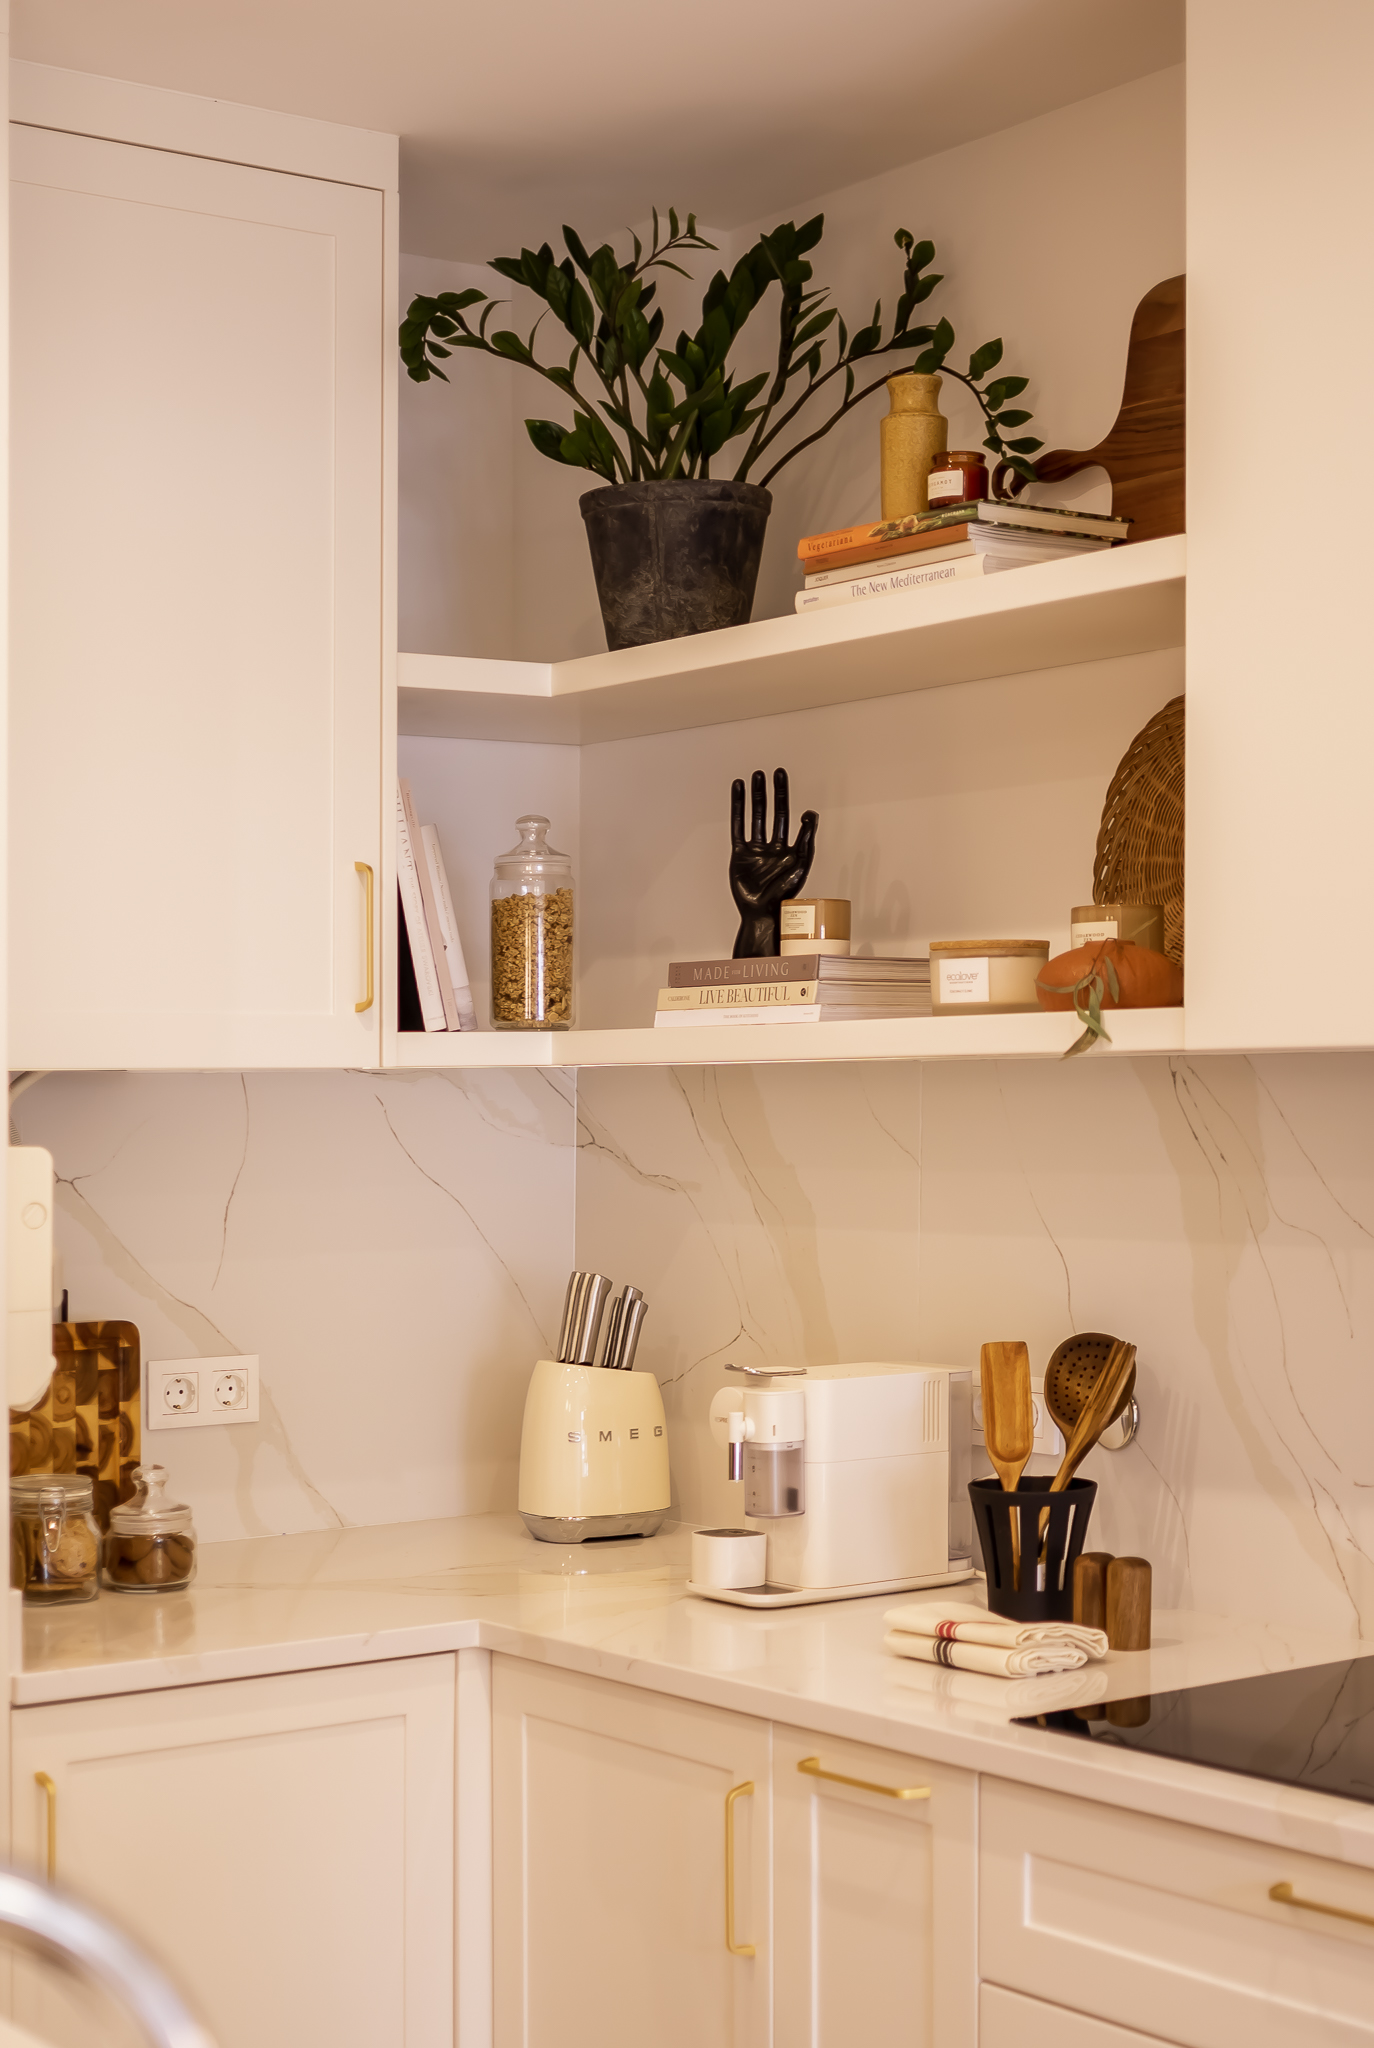 Design de interiores - Cozinha moderna com armários tipo shaker e ilha, acabamentos brancos e madeira